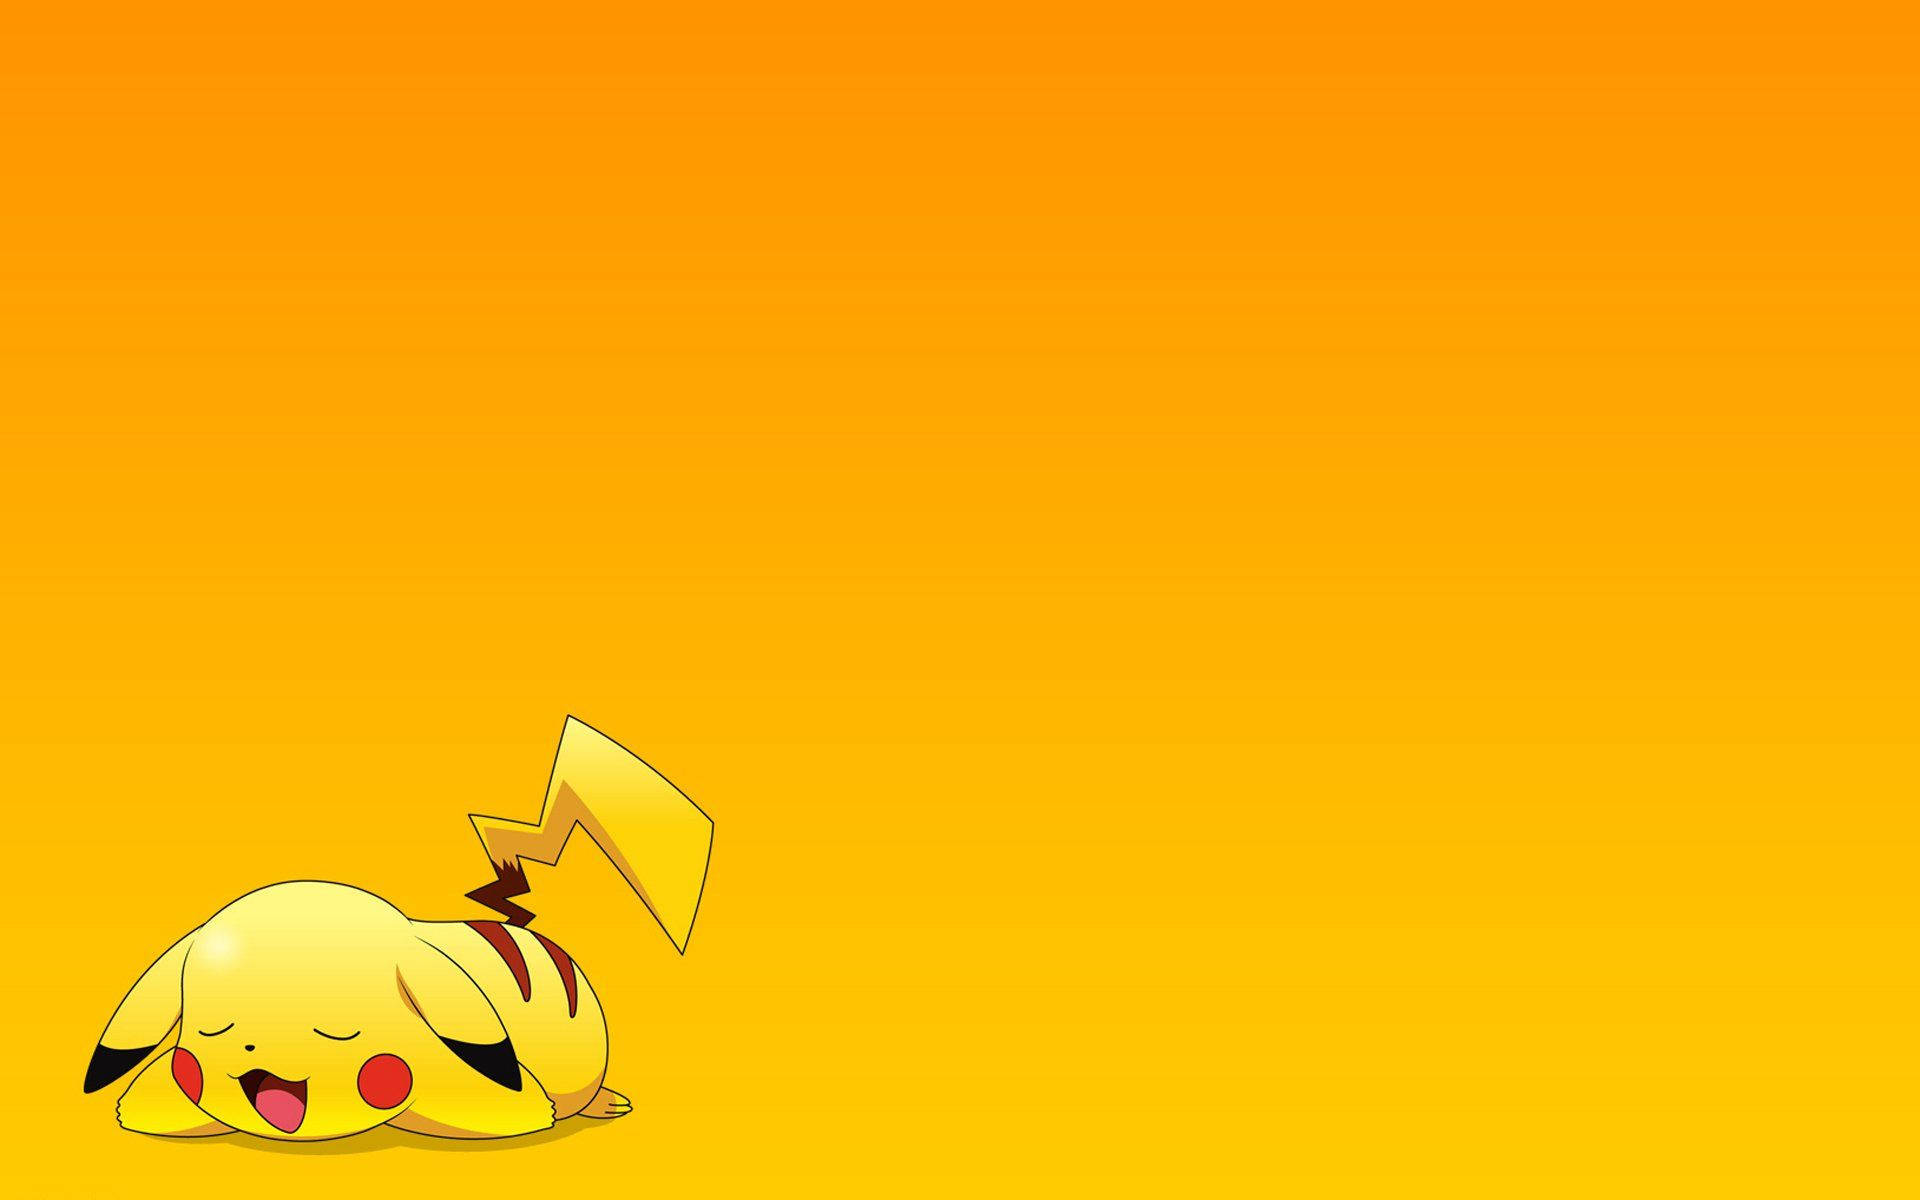 Pikachu3d, Descansando Plácidamente, Pokémon. Fondo de pantalla